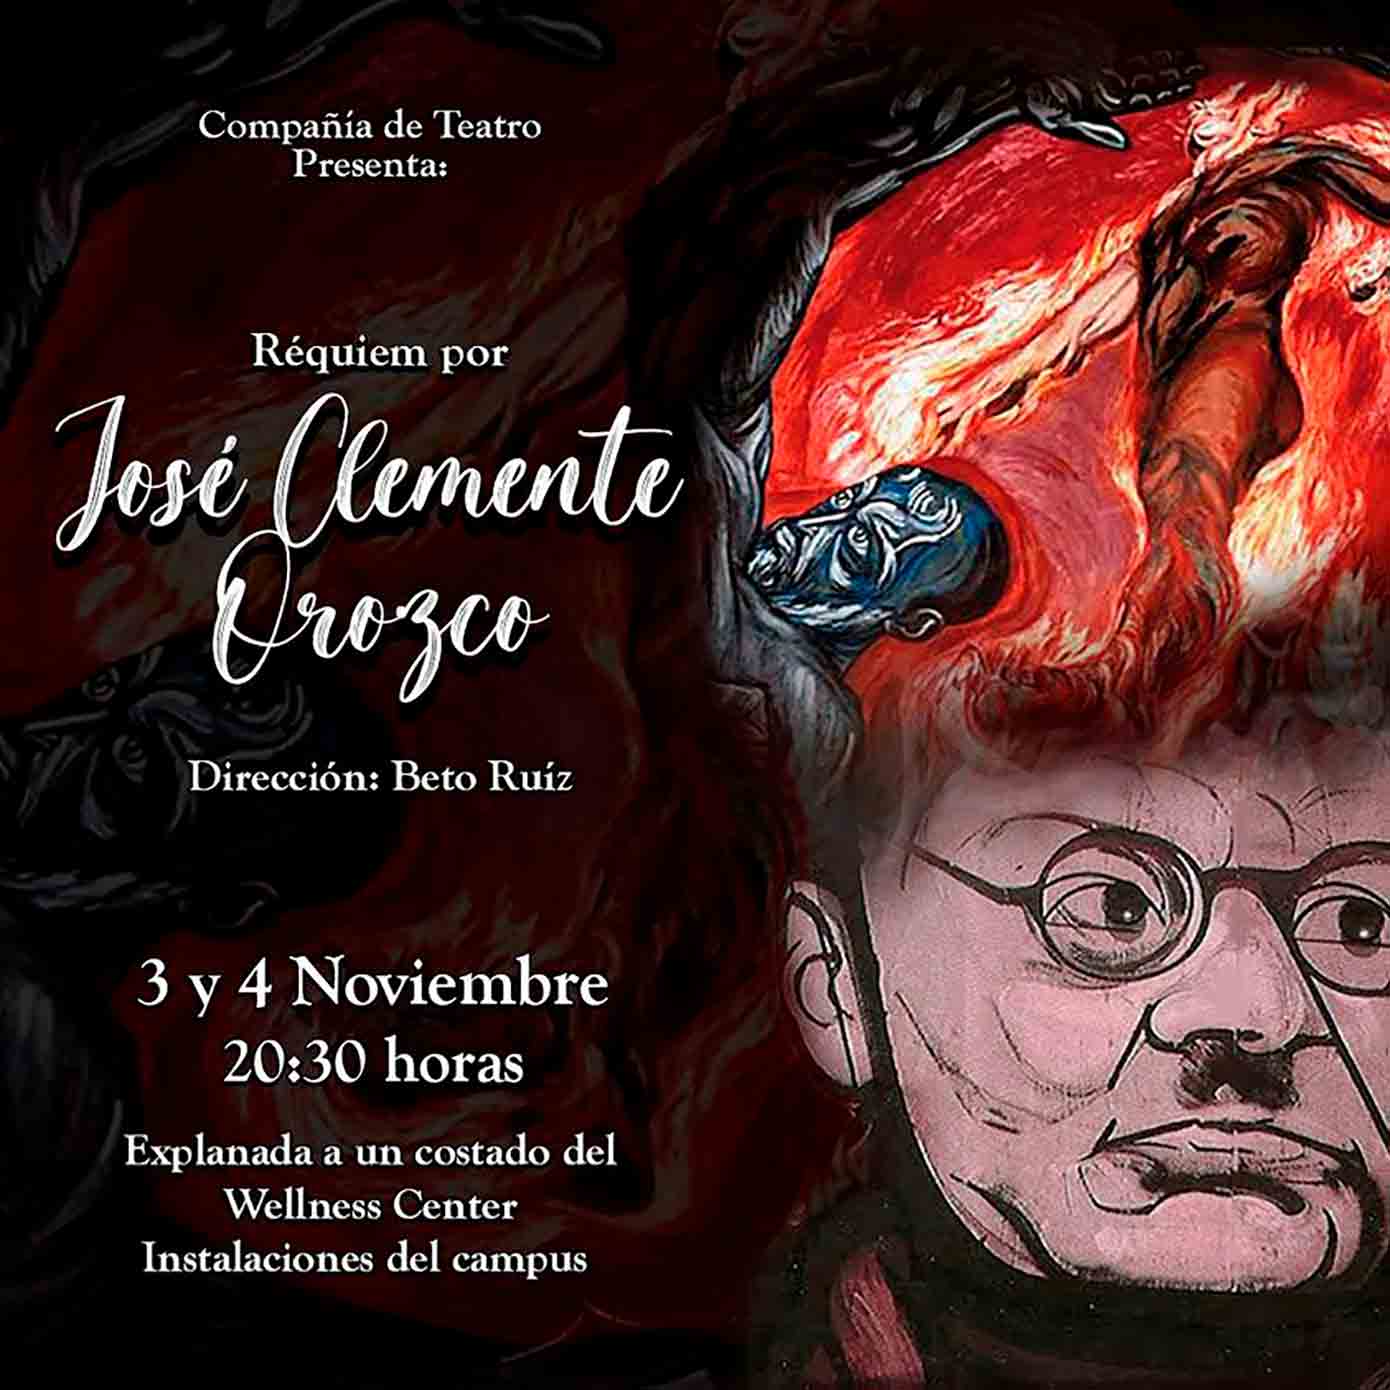 Réquiem por José Clemente Orozco, presentado por Arte y Cultura del Tec Guadalajara.